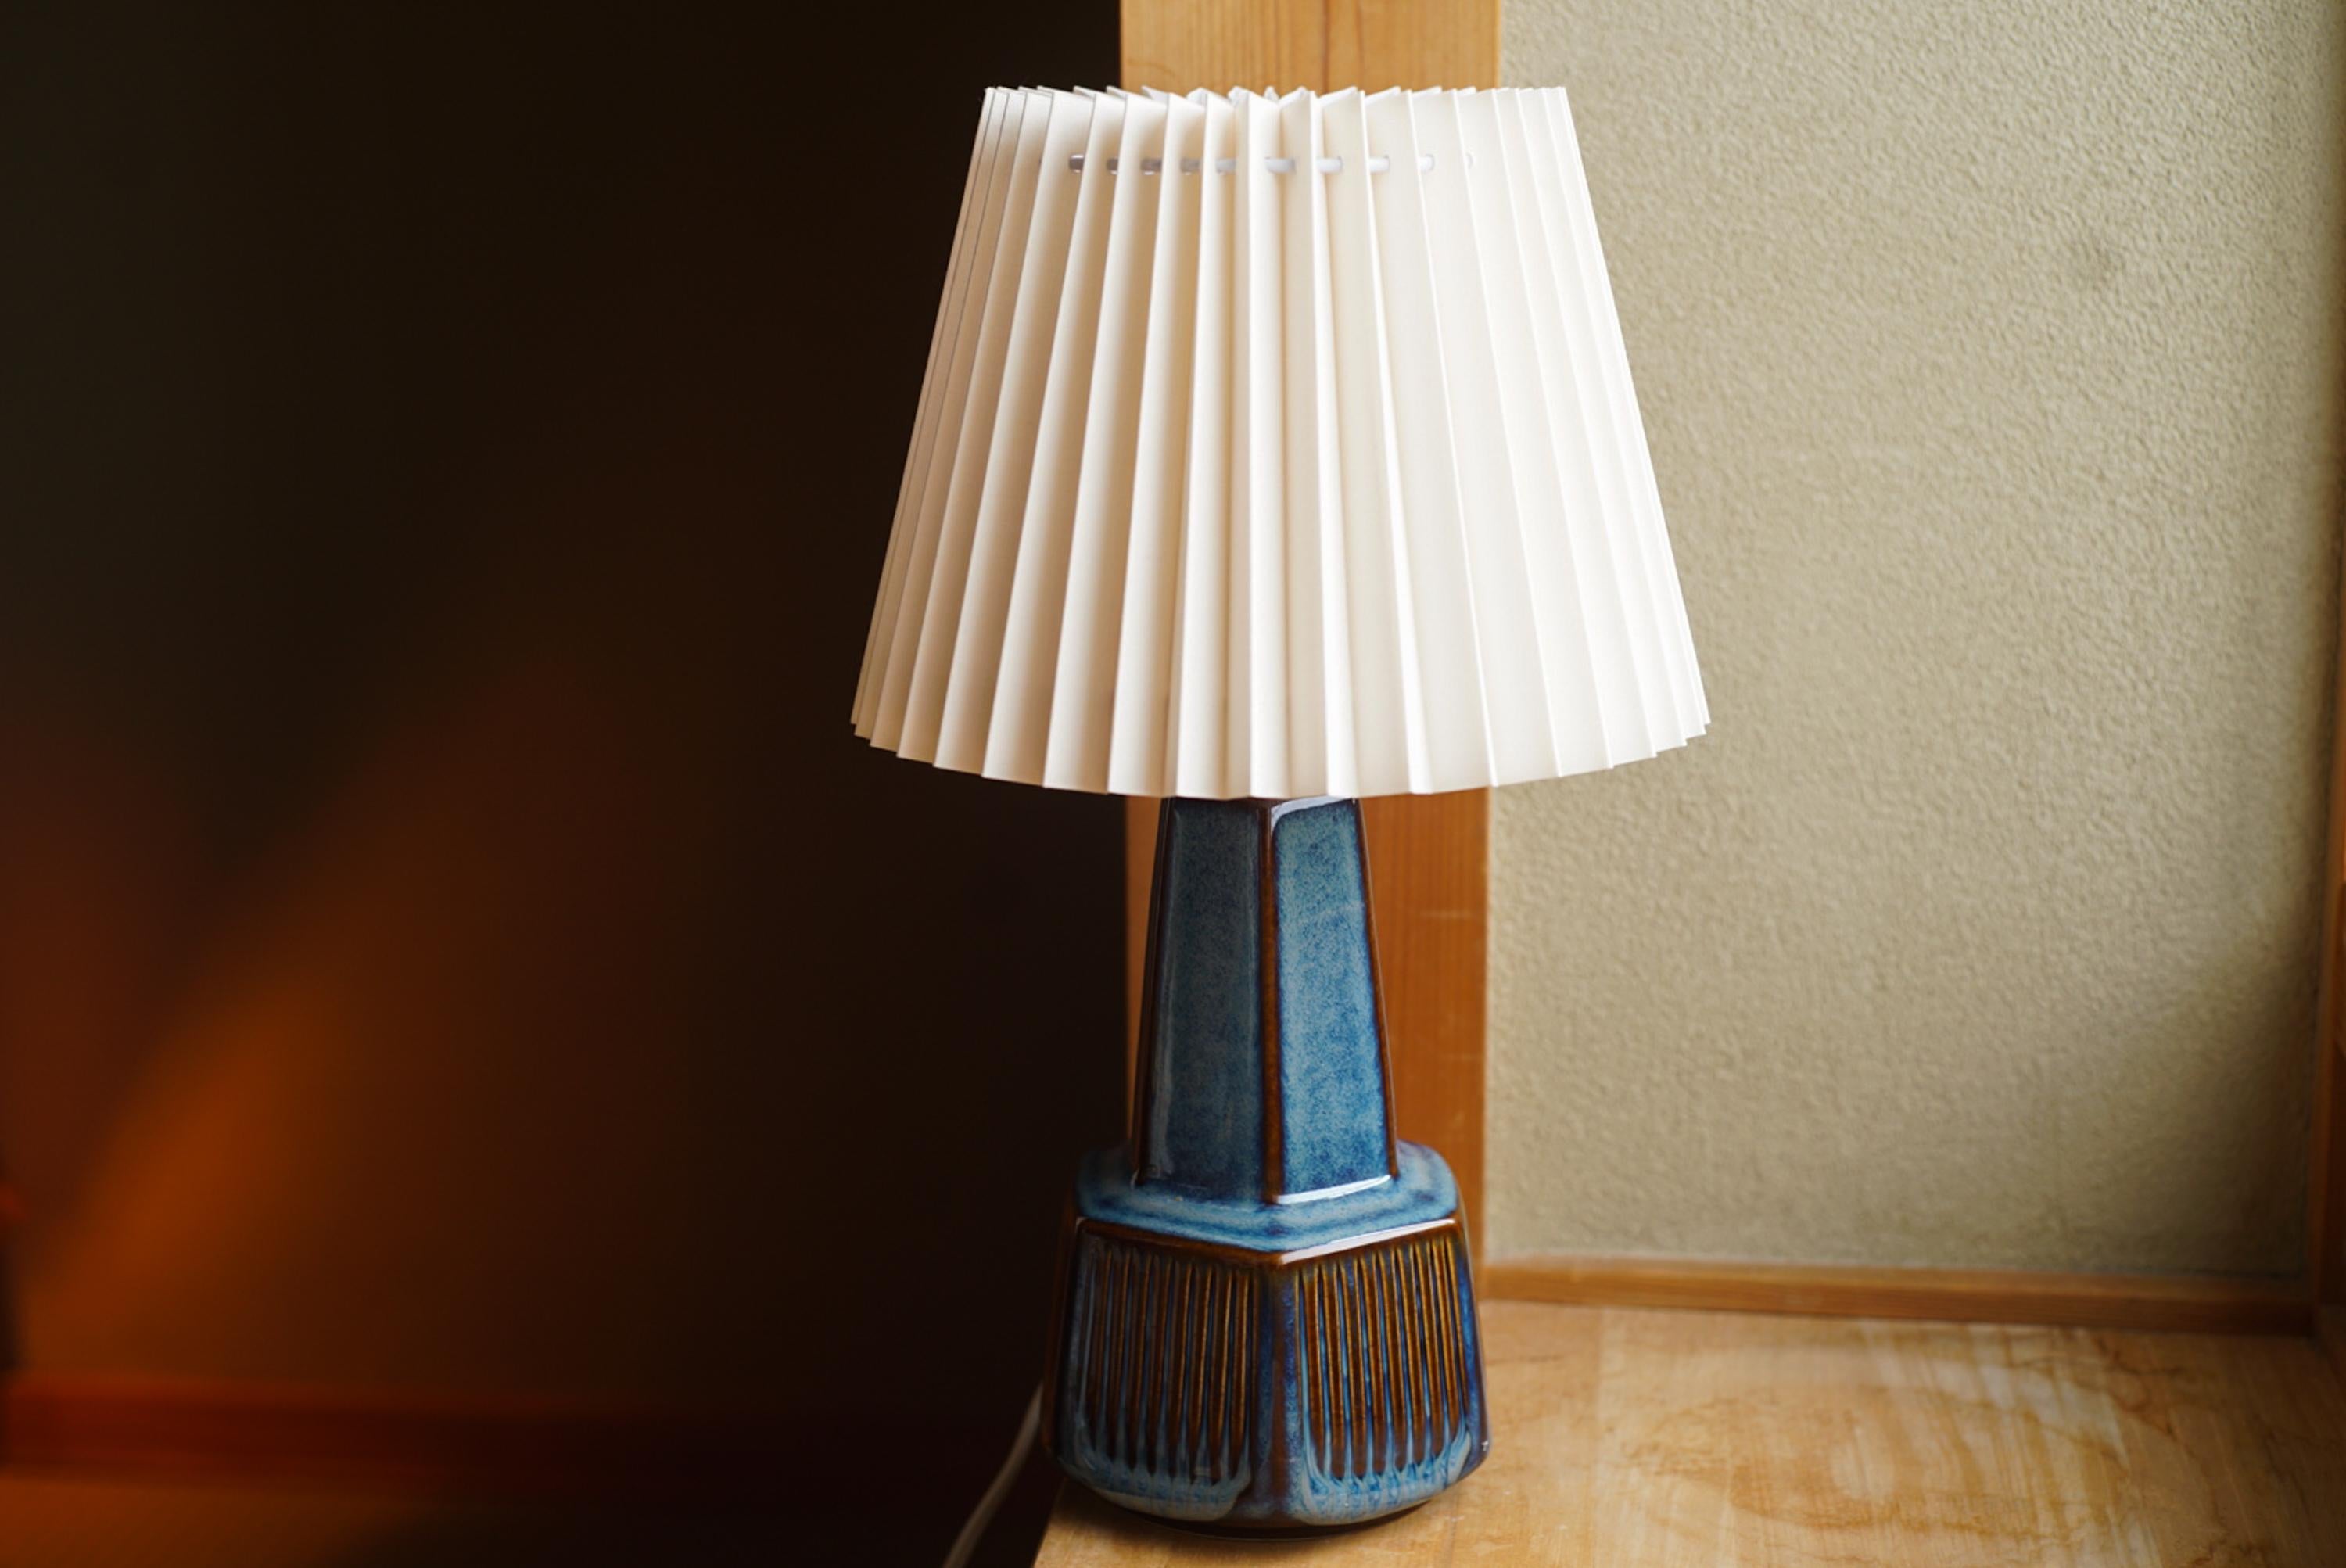 Lampe de table en grès fabriquée à la main par Einar Johansen pour Danish Søholm, situé sur l'île de Bornholm au Danemark, dans les années 1960.

Estampillé et signé sur la base.

Vendu sans abat-jour. La hauteur comprend la douille. Entièrement